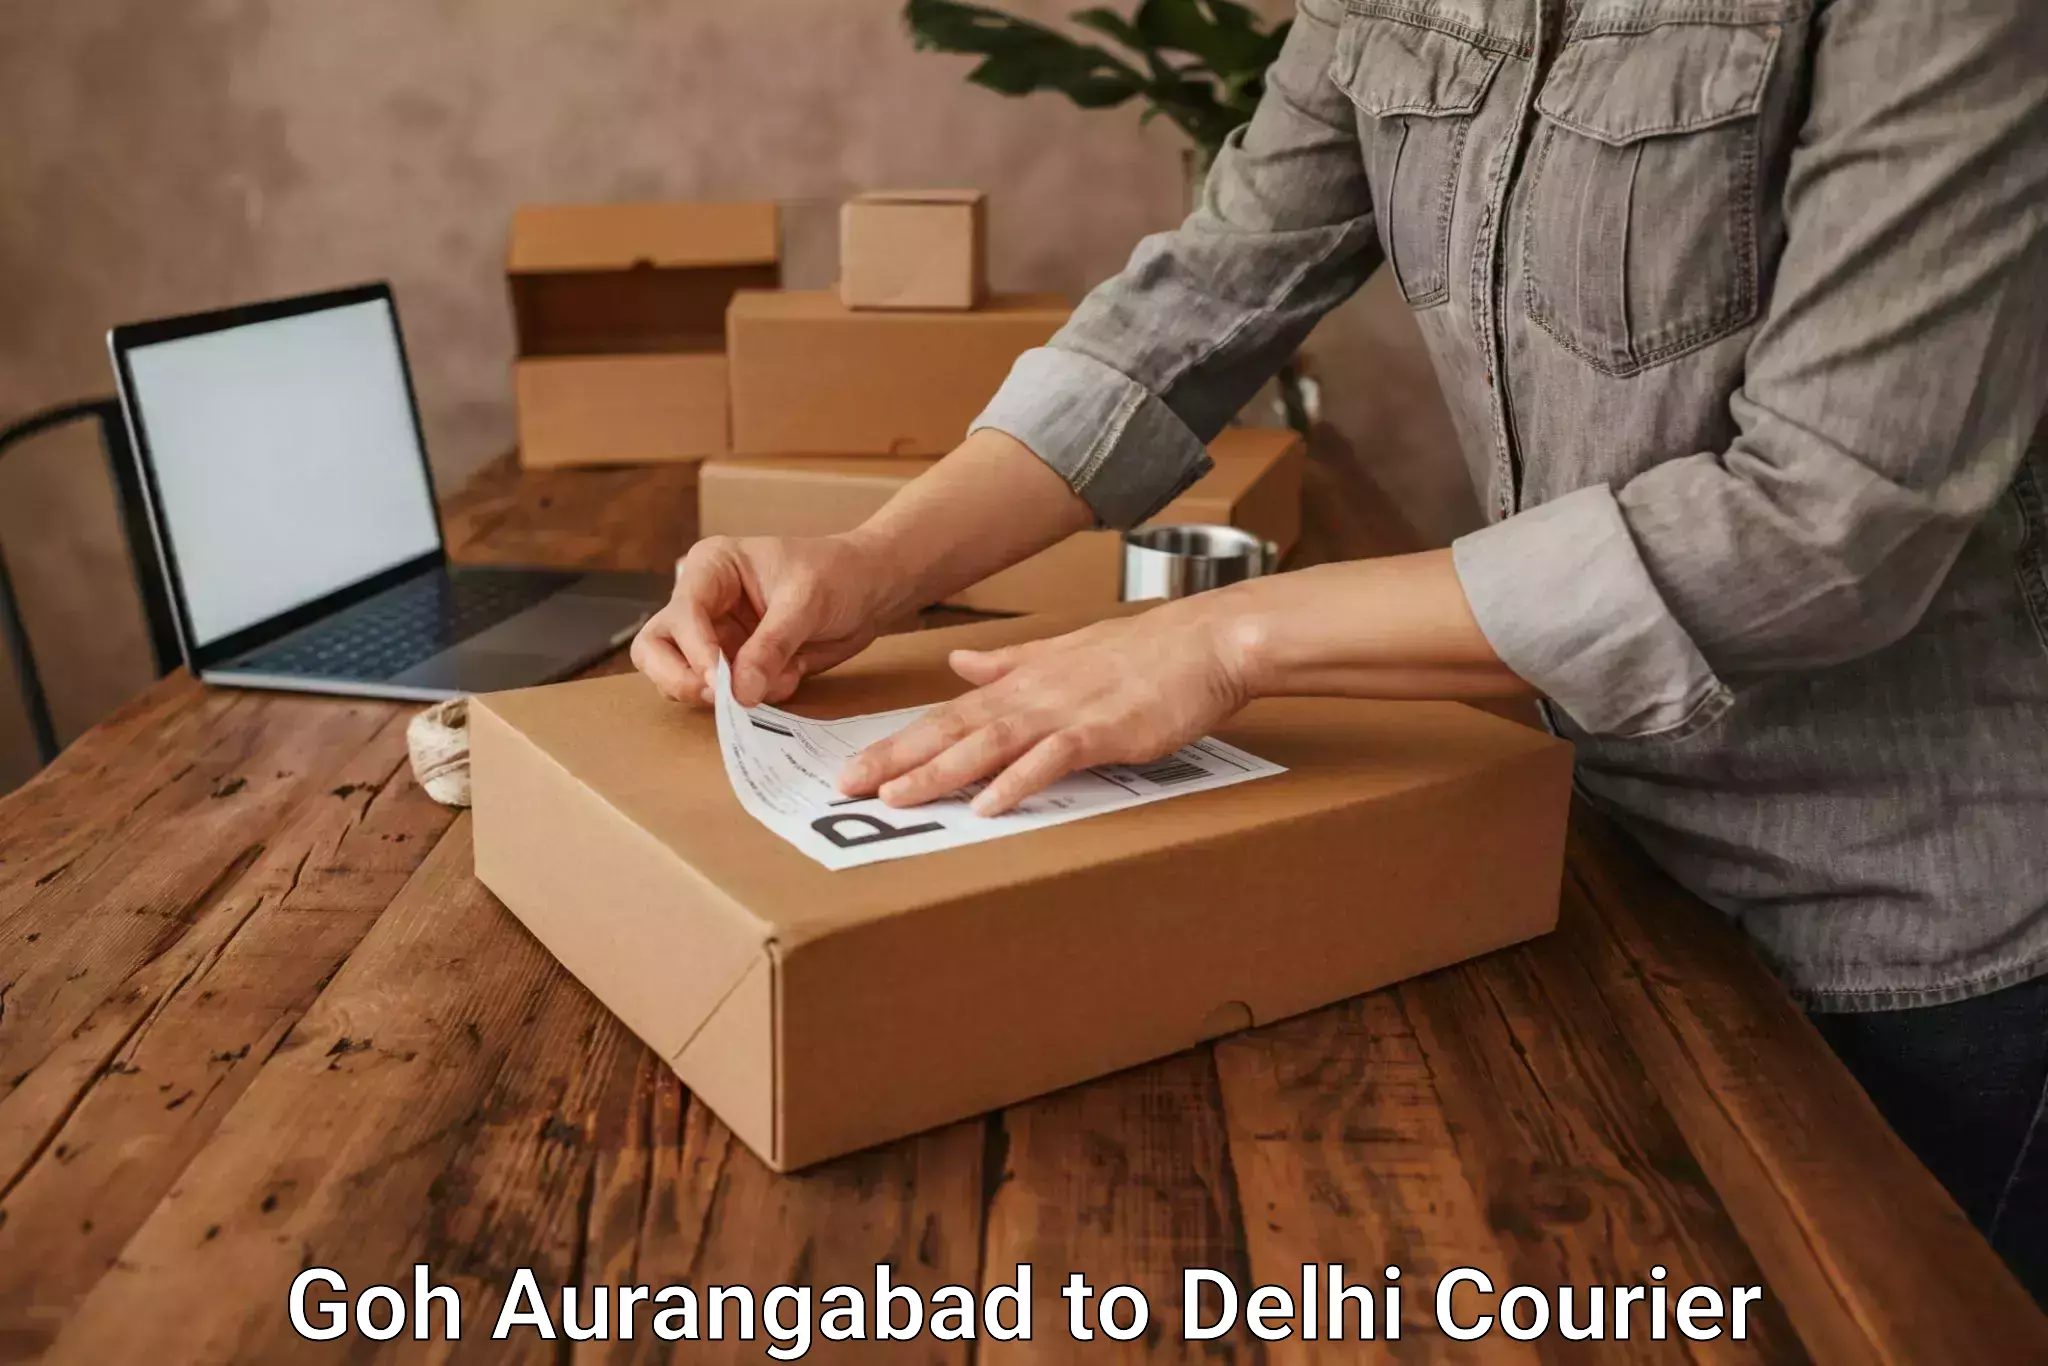 Furniture delivery service Goh Aurangabad to NIT Delhi